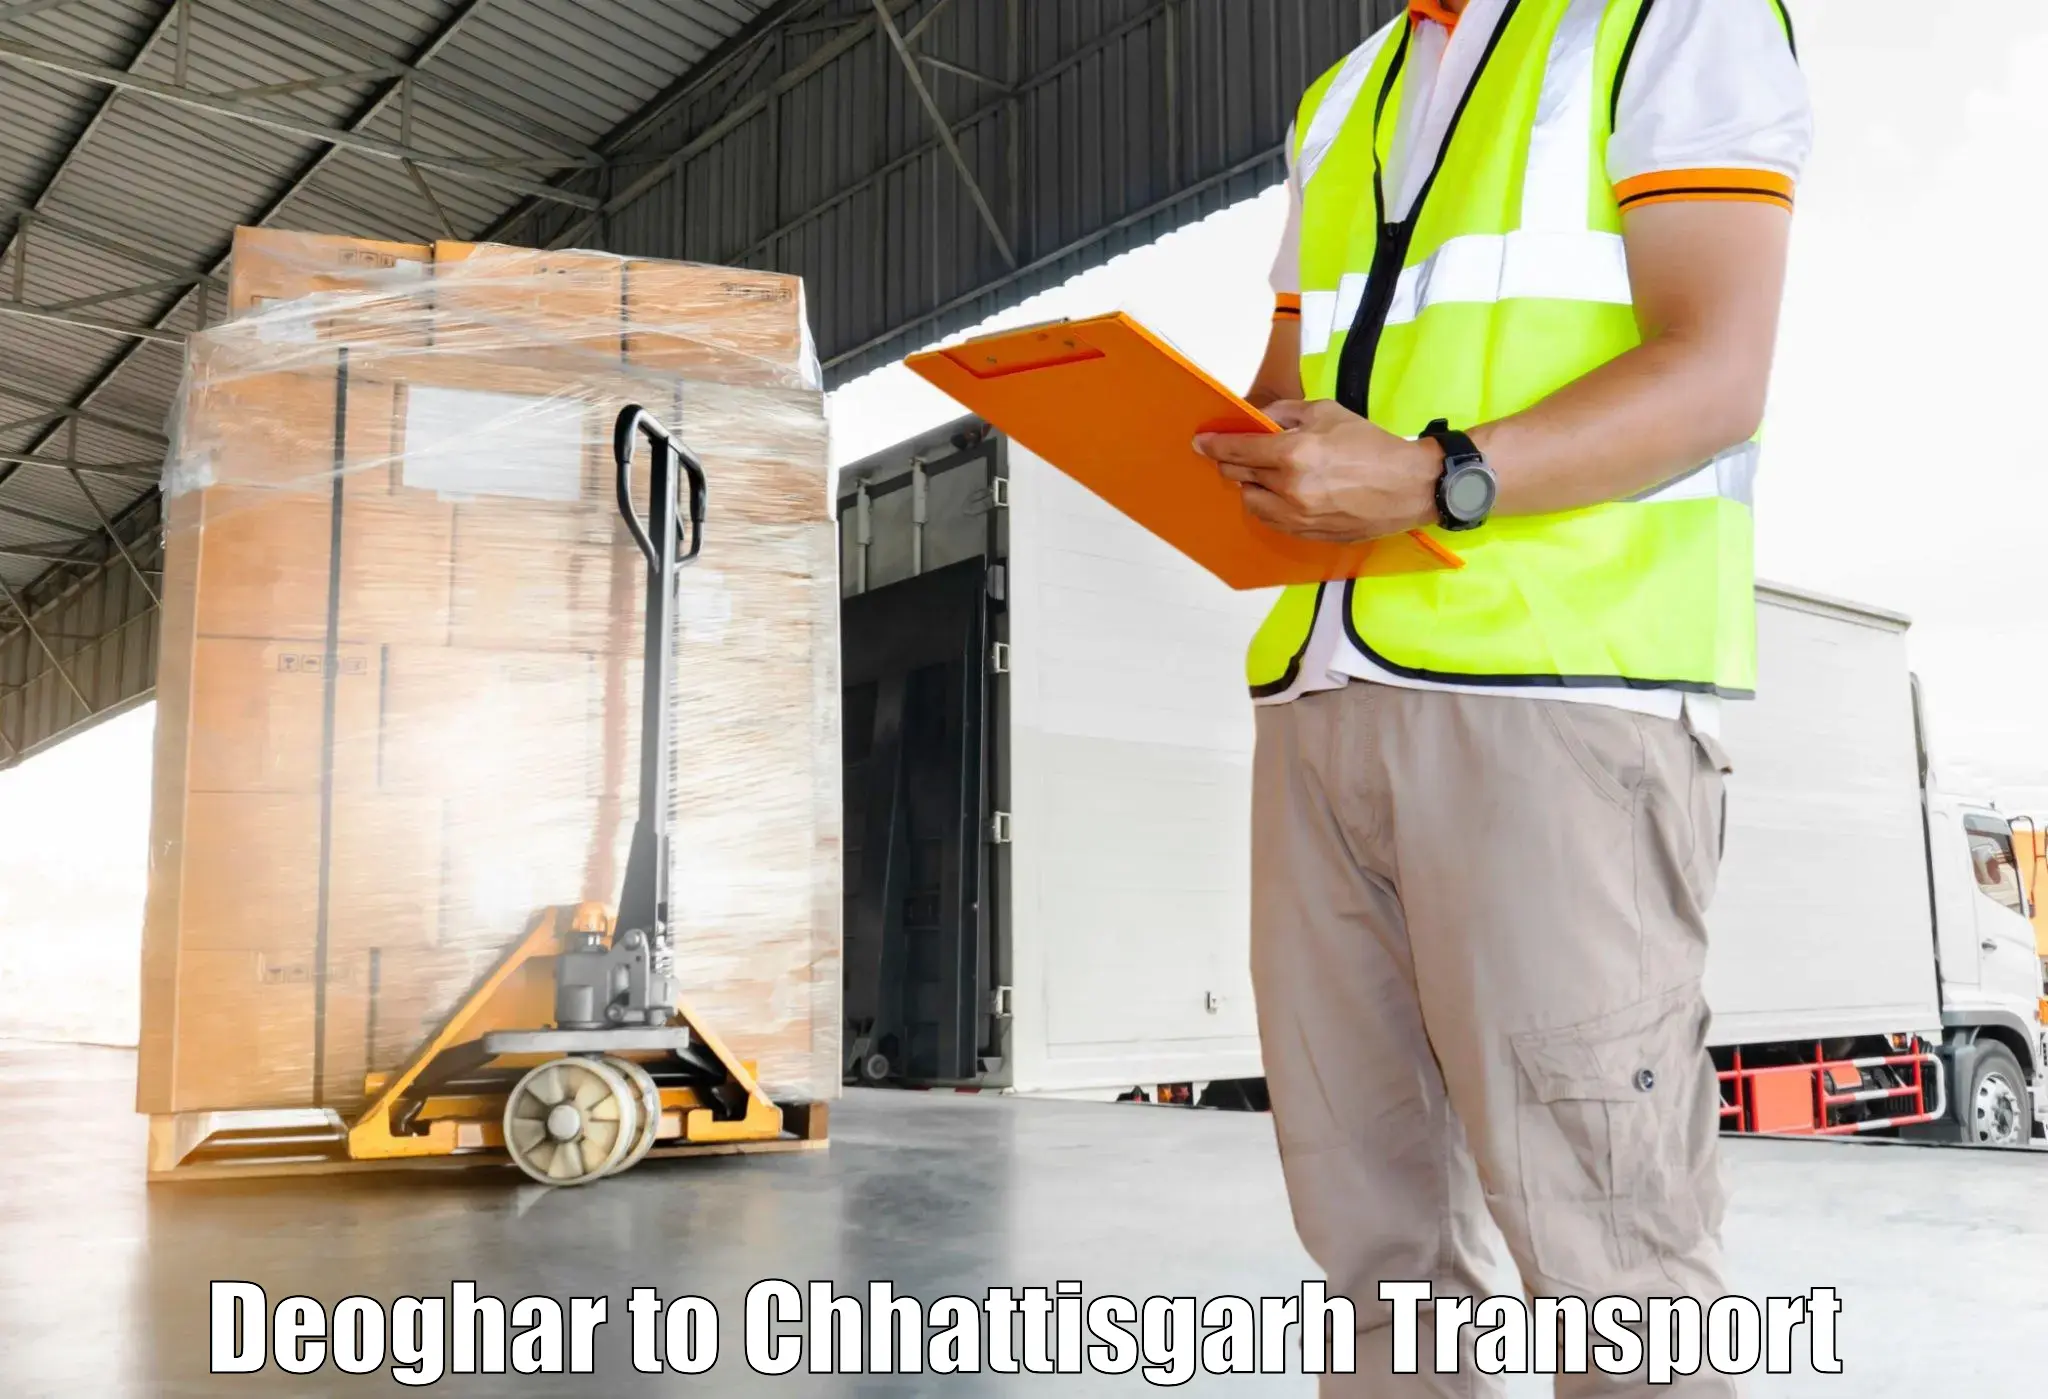 Furniture transport service Deoghar to Mandhar